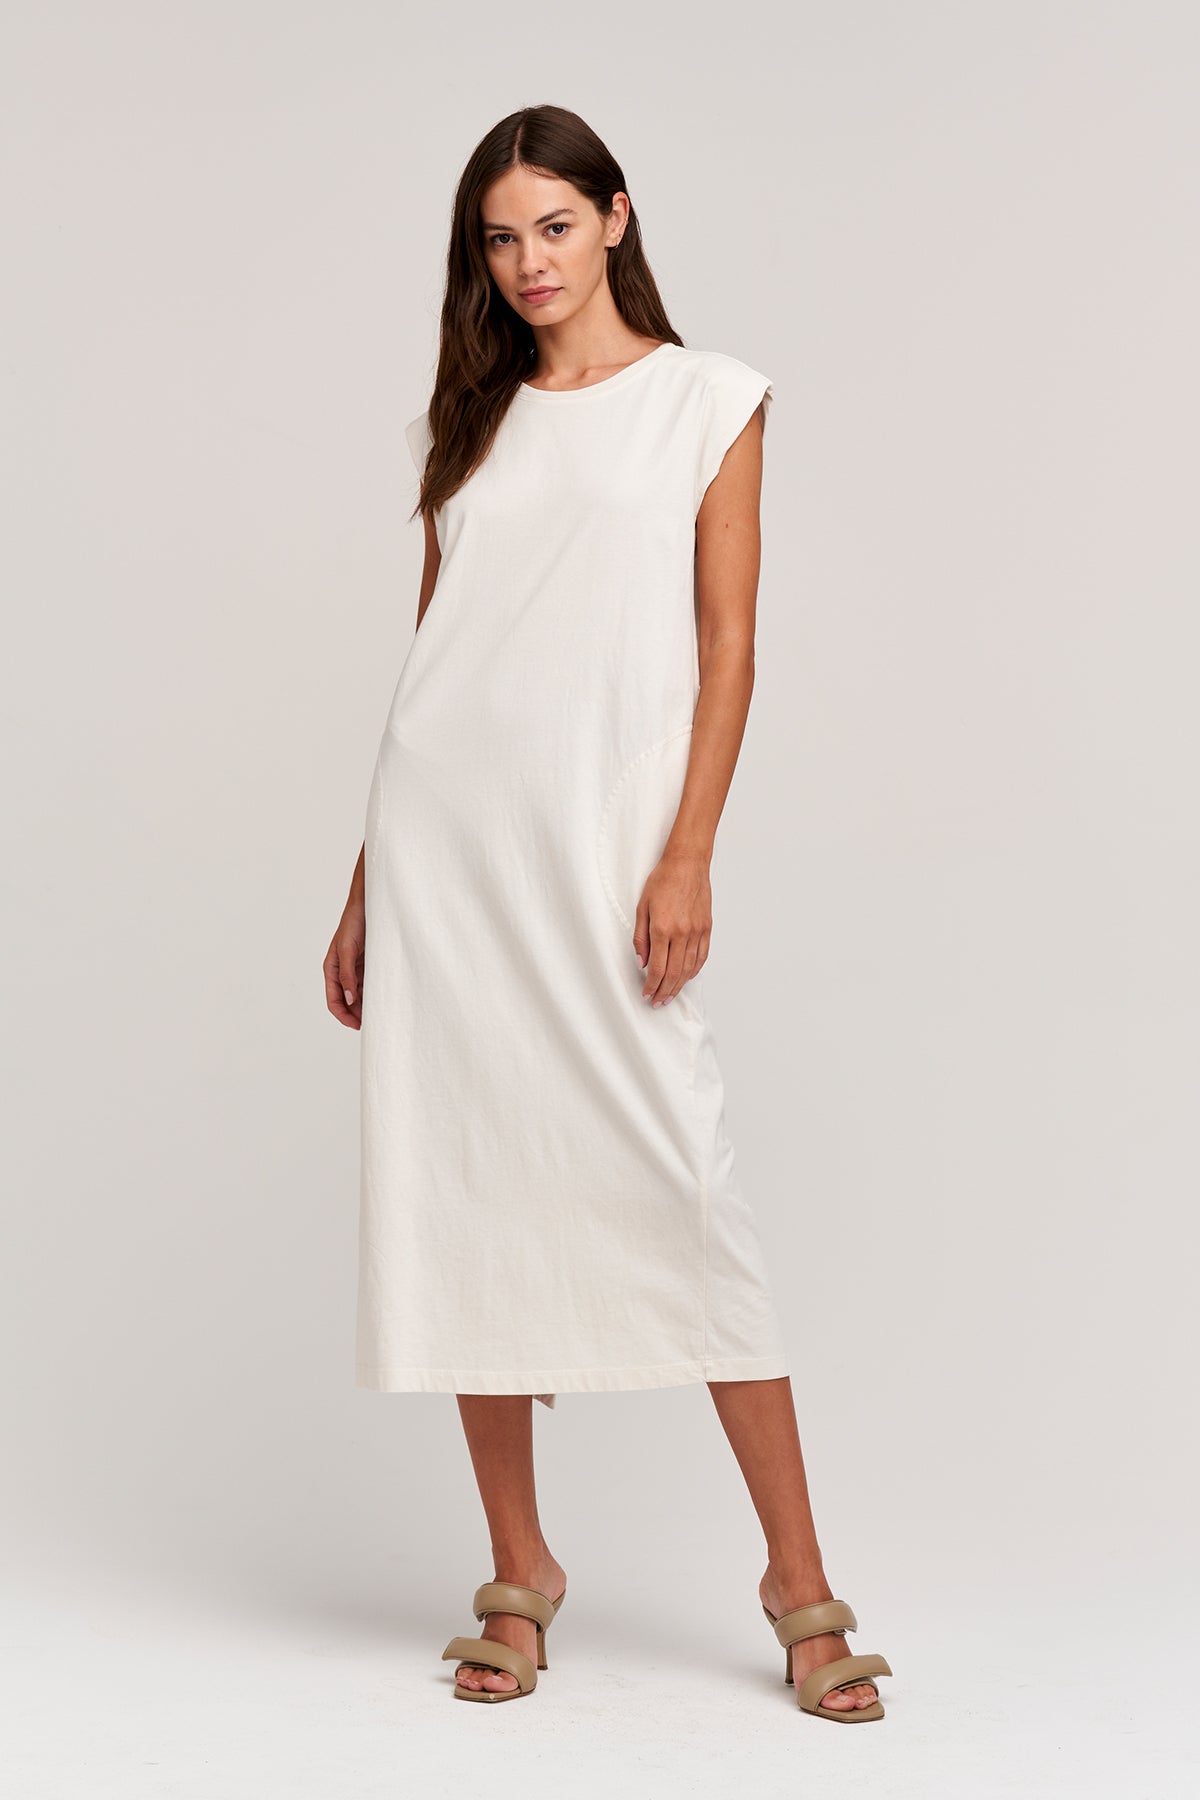 A model wearing the KENNY SLEEVELESS DRESS by Velvet by Graham & Spencer.-24313229312193